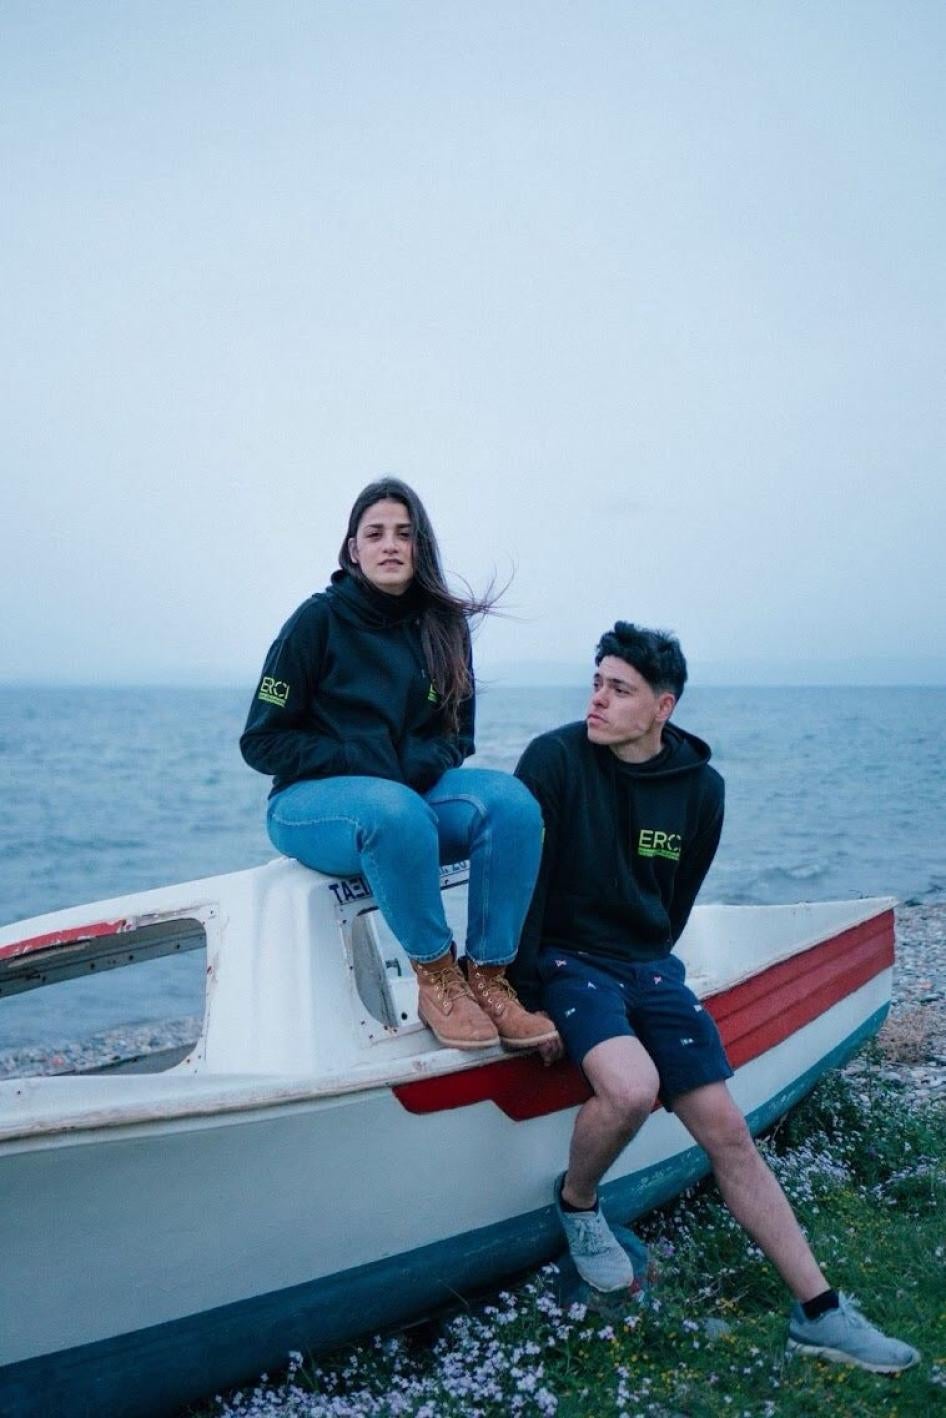 Ο Sean Binder και η Sarah Mardini, εθελοντές έρευνας και διάσωσης που βοήθησαν μετανάστες και αιτούντες άσυλο στη θάλασσα, συνελήφθησαν και δικάστηκαν στην Ελλάδα με αβάσιμες κατηγορίες.